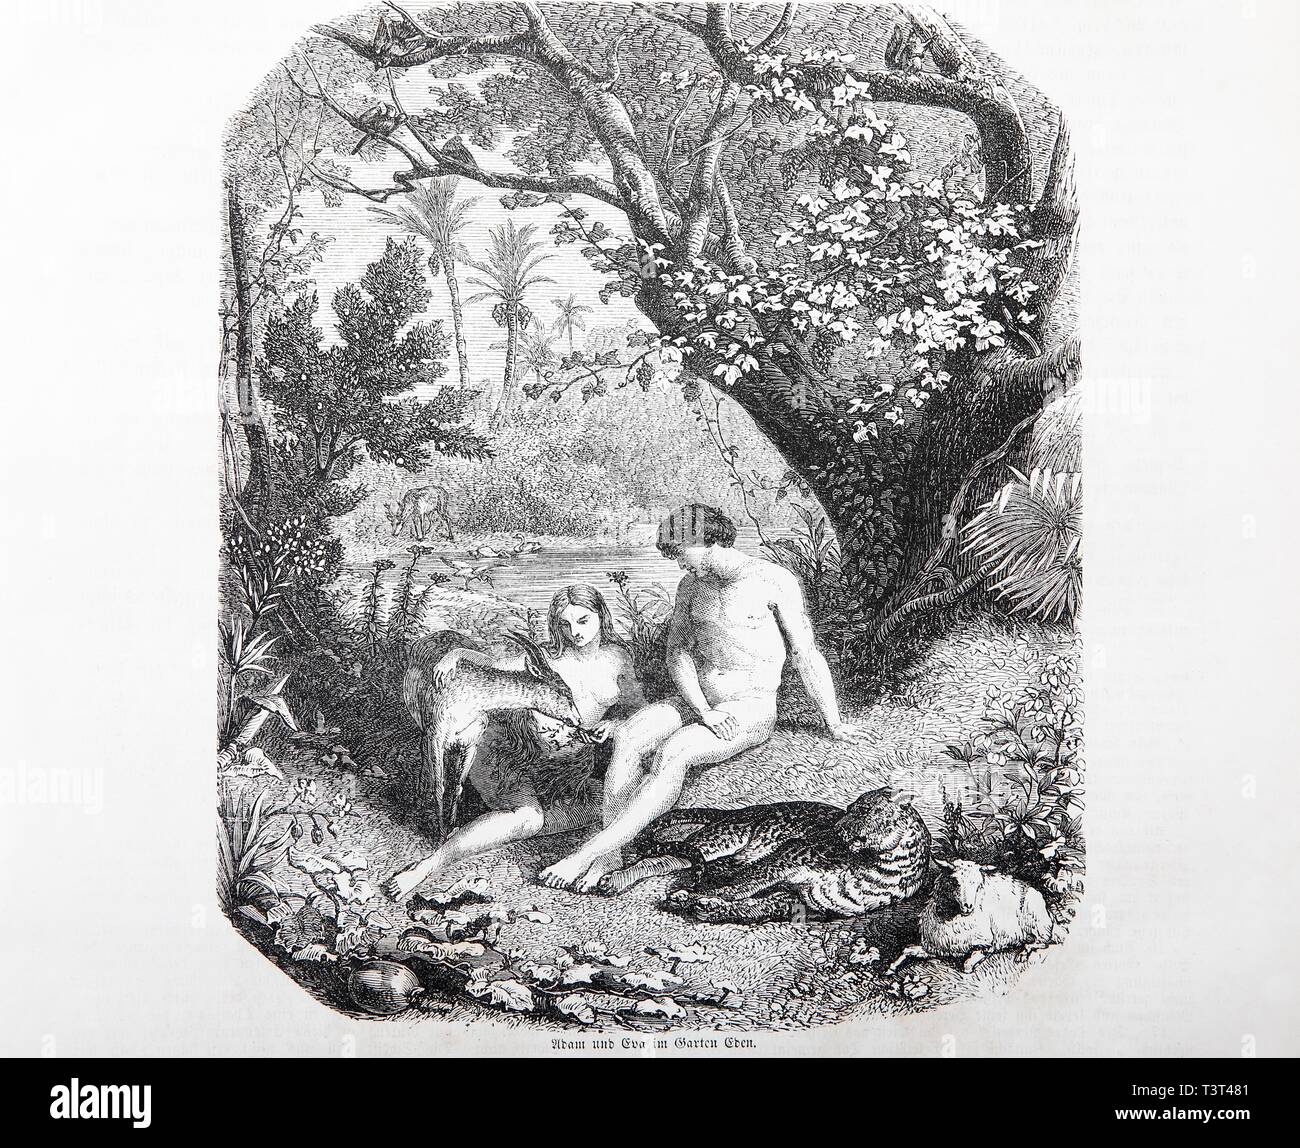 Adam et Eve dans le jardin d'Eden, Illustration historique dans une vieille Bible, à partir de 1886, l'Ancien Testament, la Sainte Ecriture, Allemagne Banque D'Images